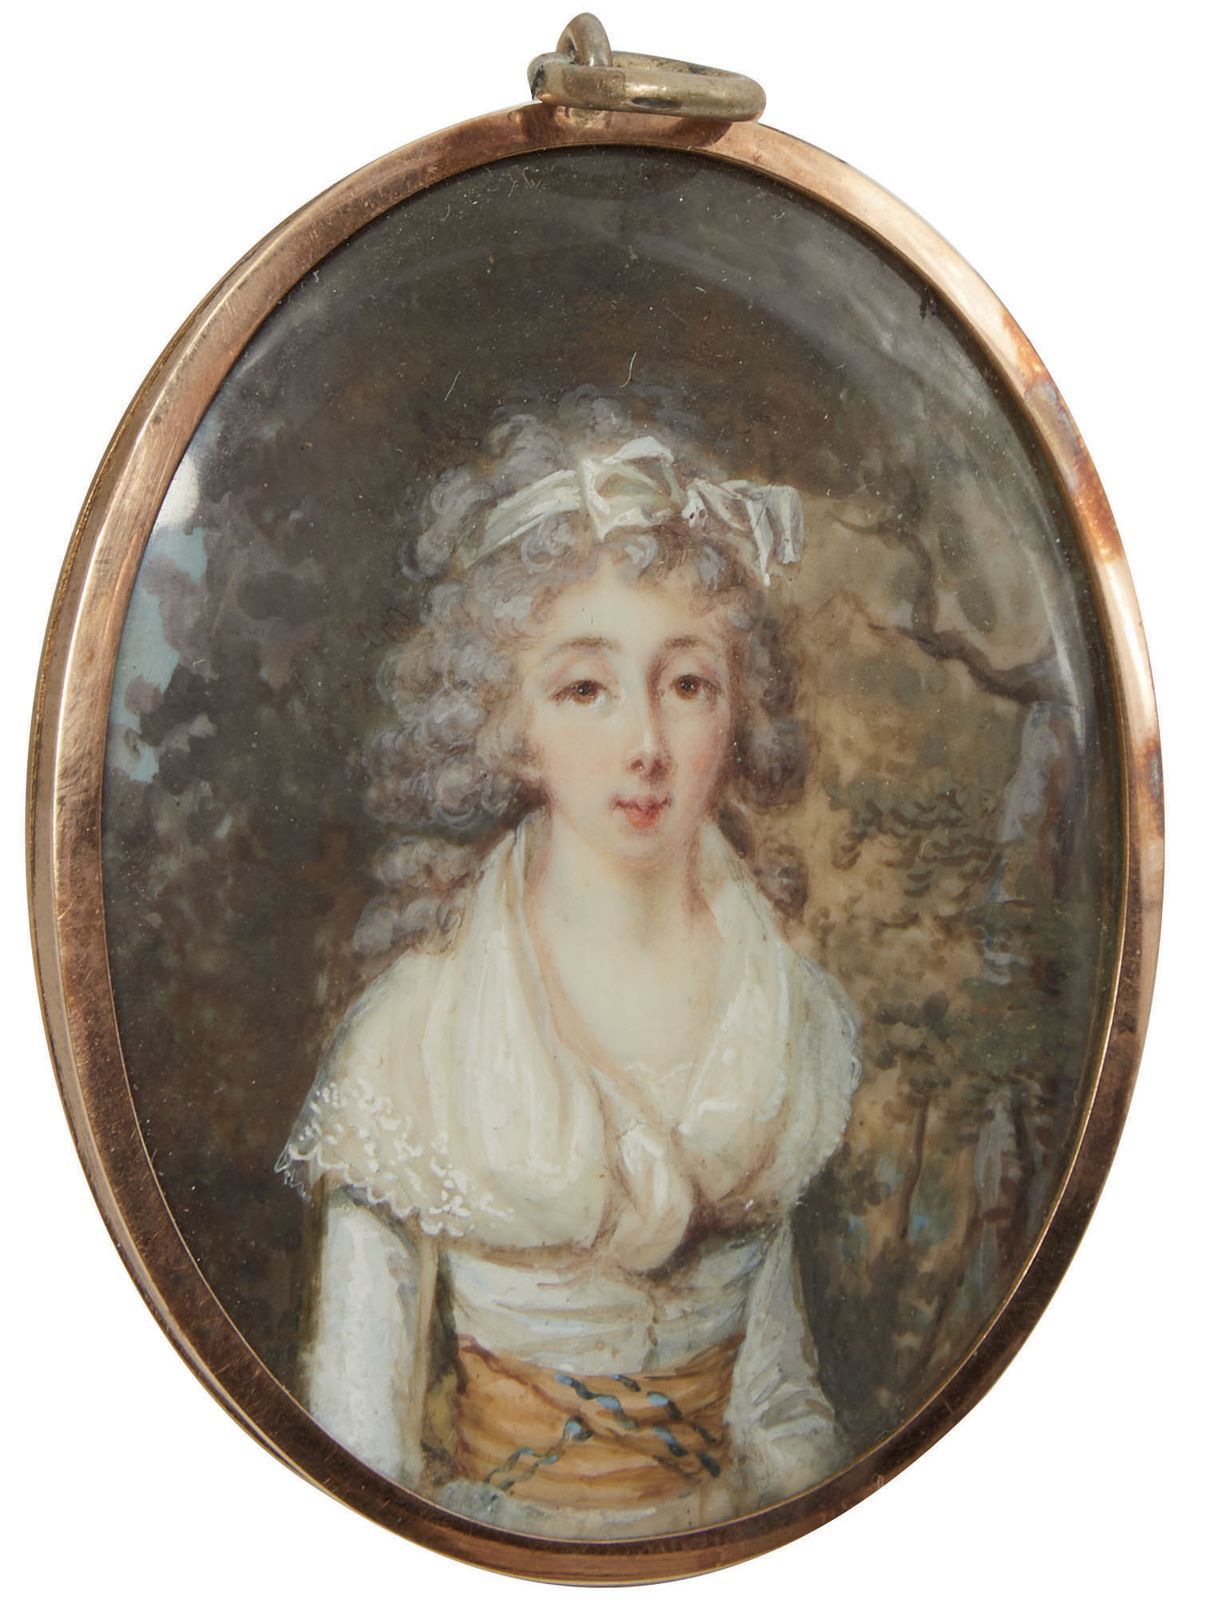 Null 211 描绘森林背景下的女性半身像的微型画。

反面是由辫子制成的

18世纪晚期

视线5x4.5厘米